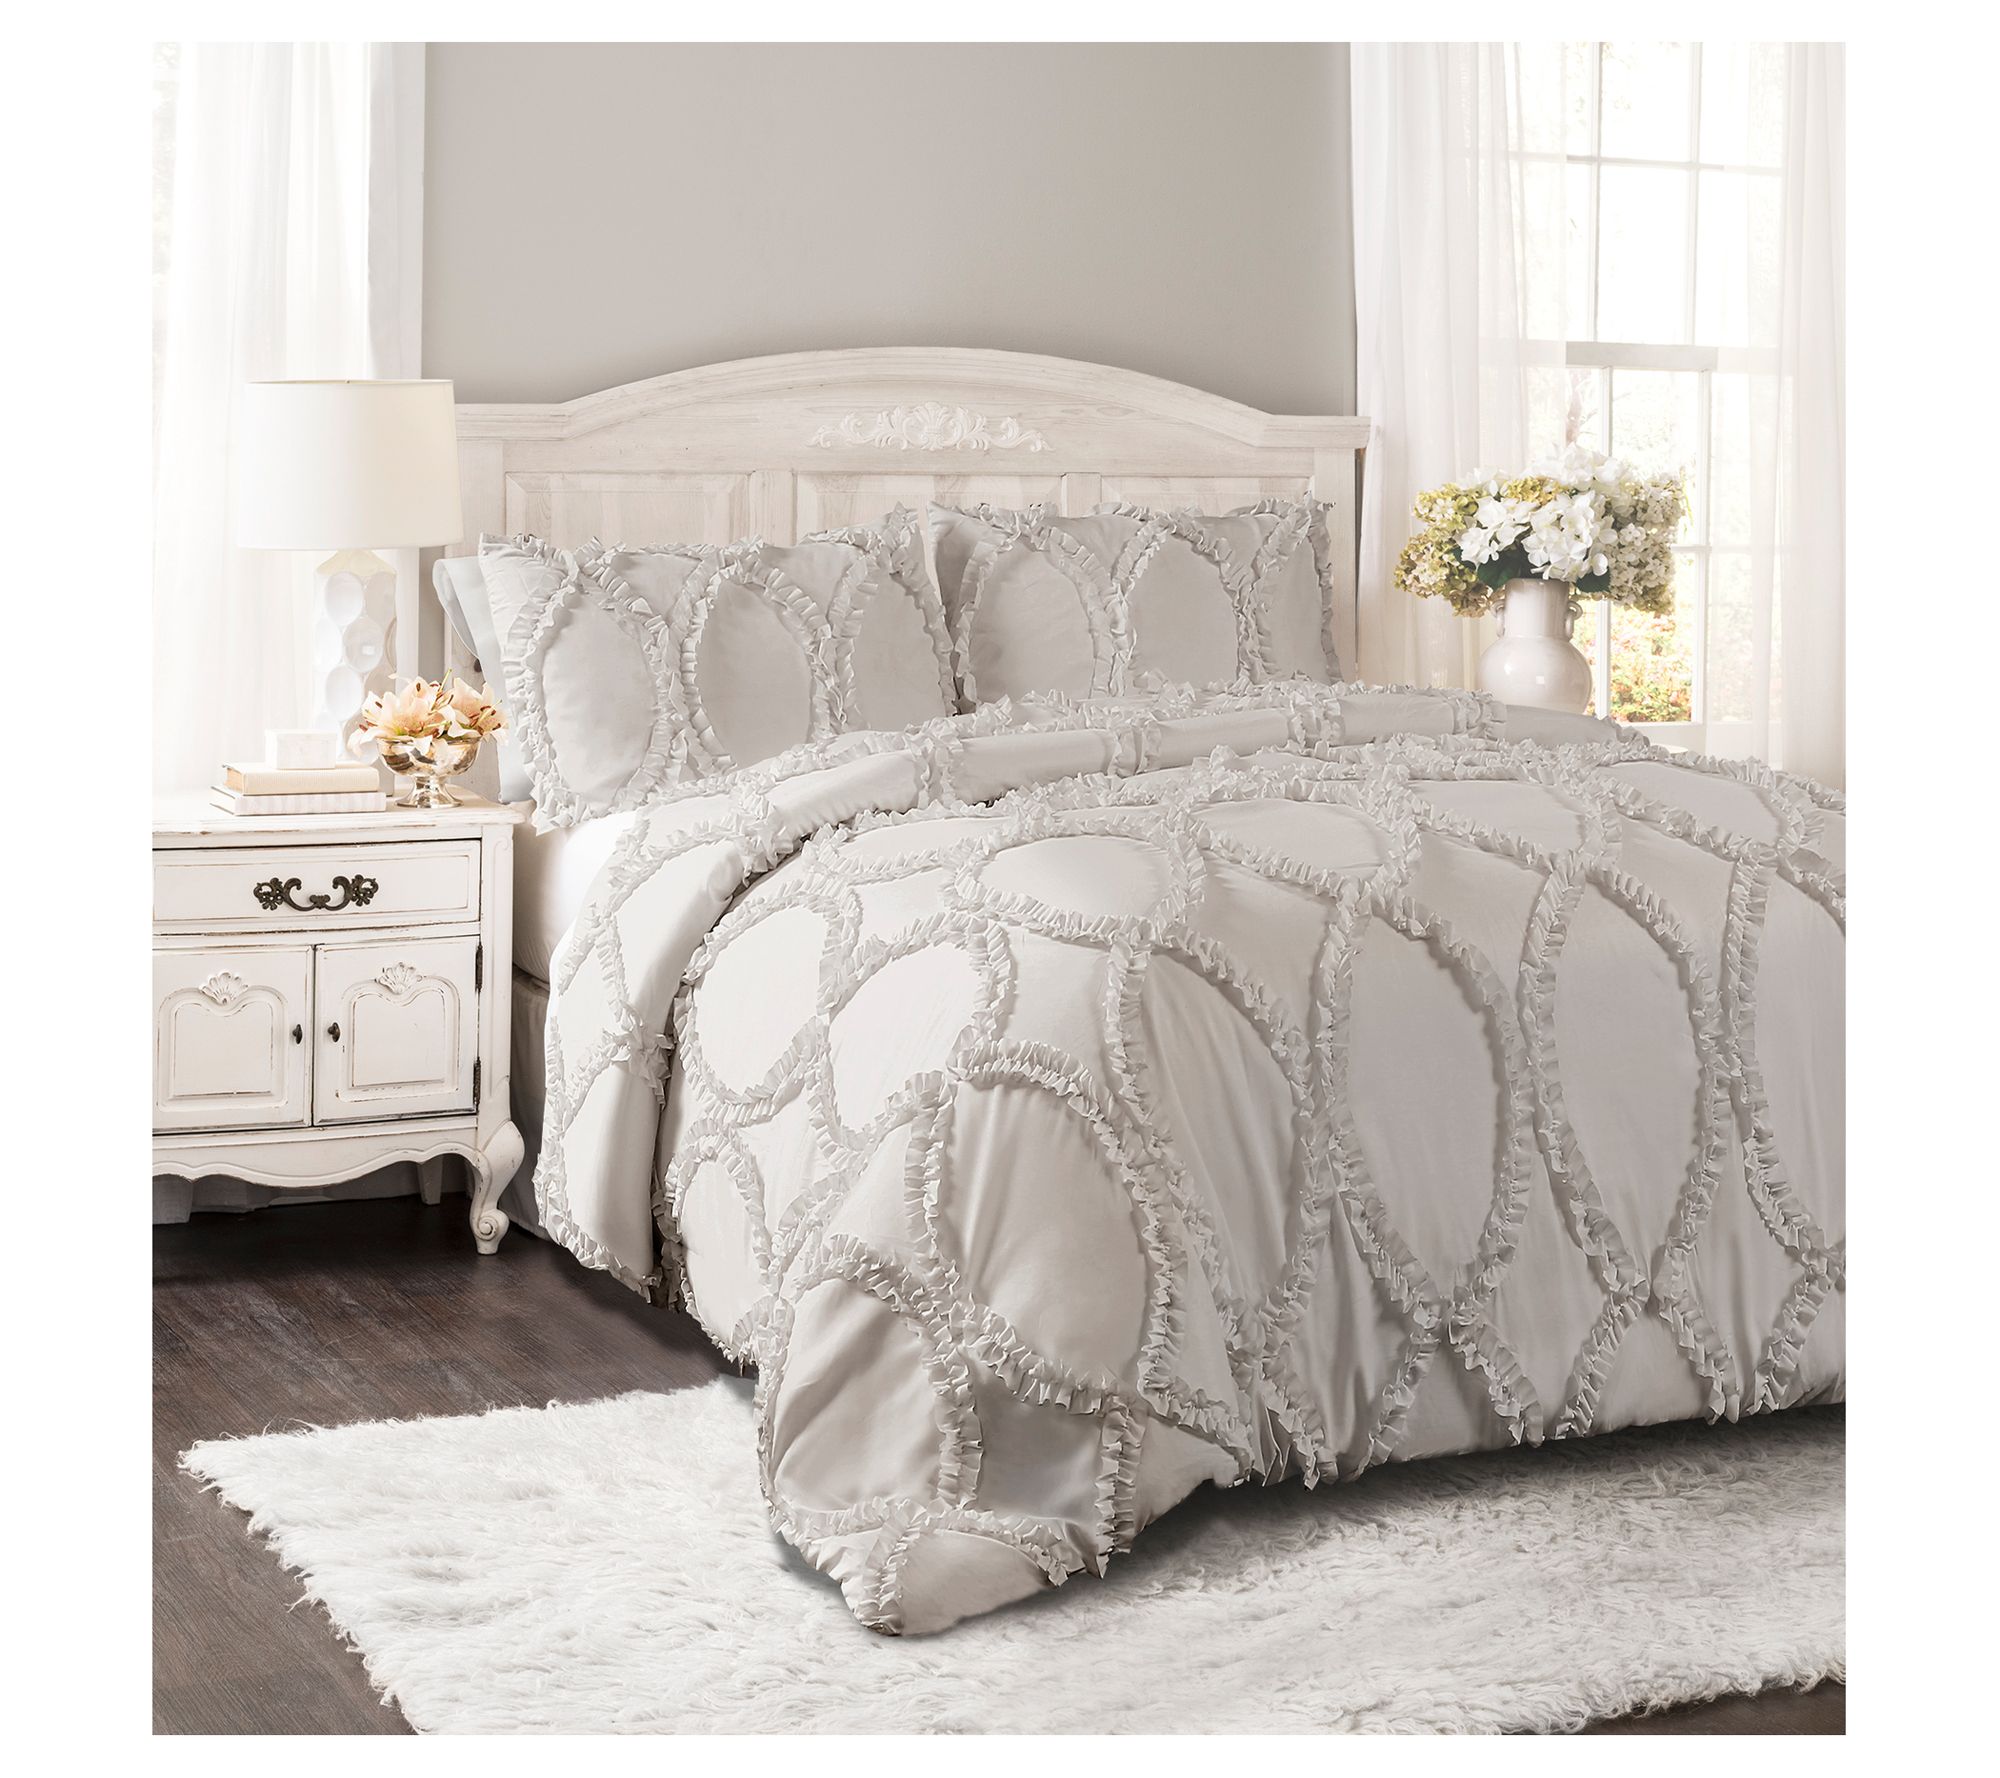 Lush Decor Crinkle Textured Dobby Comforter Light Gray 3PC Set King